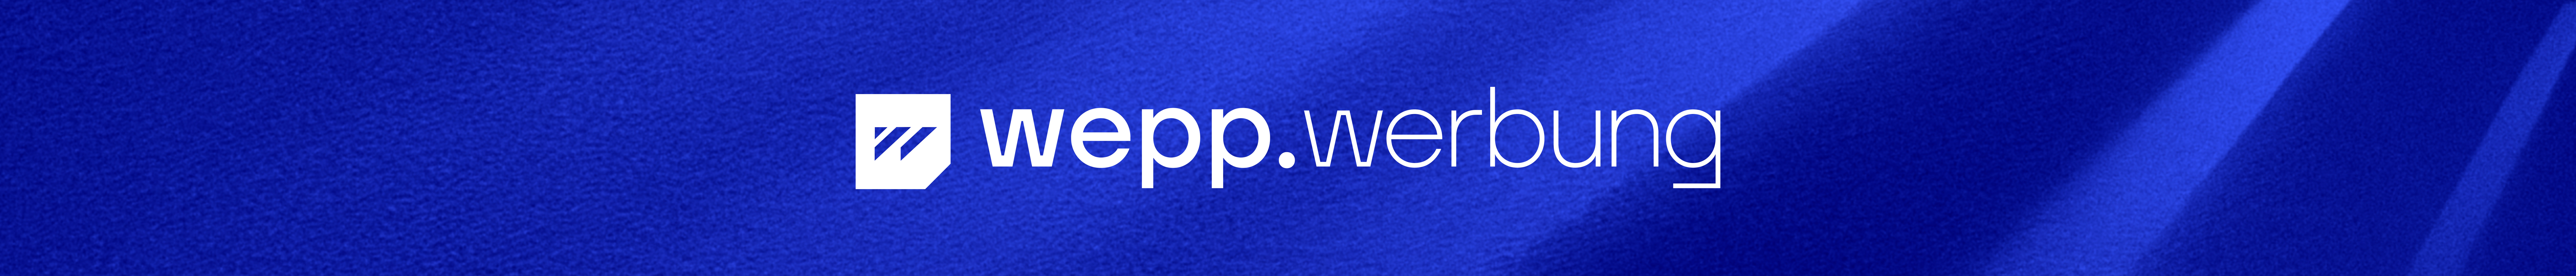 wepp werbung's profile banner